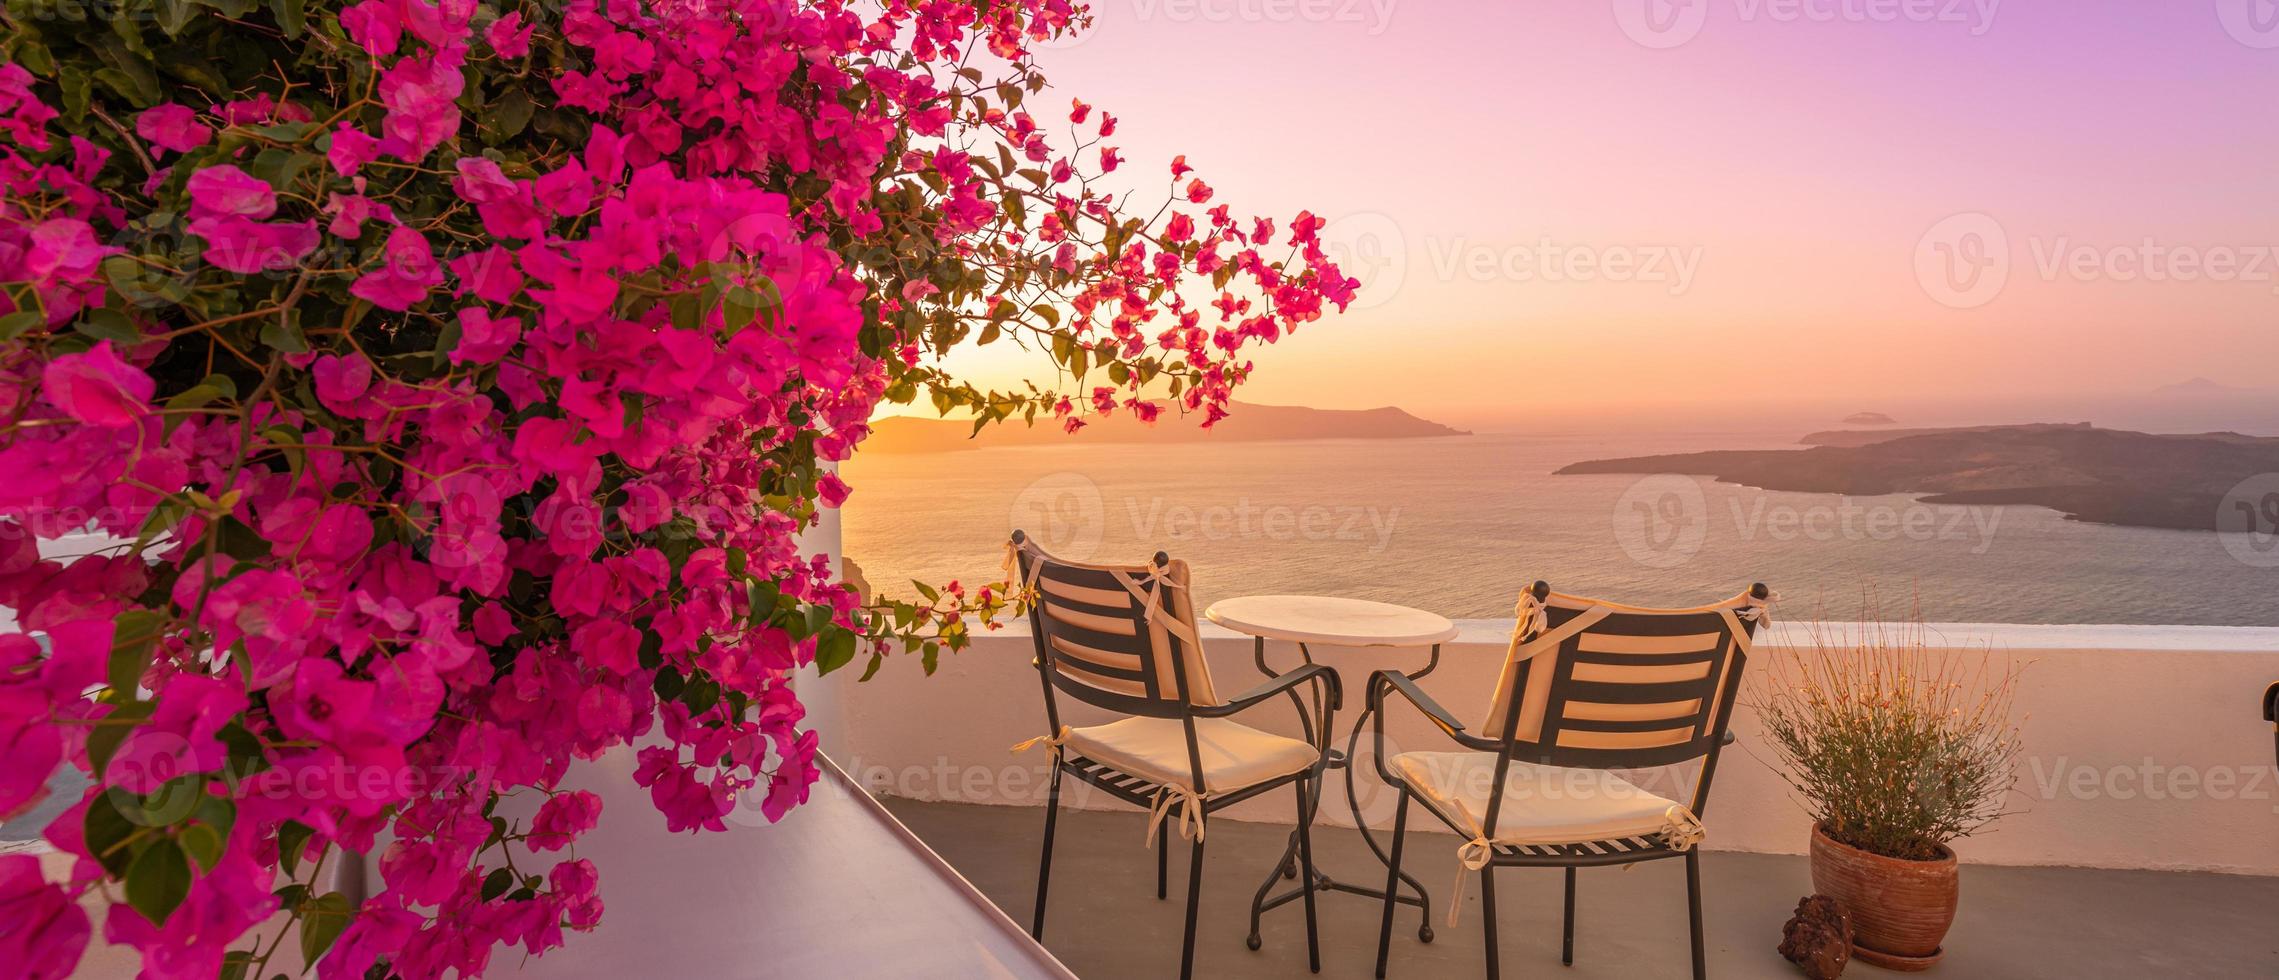 vacker utsikt över kalderan och njuta av romantiska landskap solnedgången Egeiska havet, santorini. par resor semester, smekmånad destination. romantik med blommor, två stolar bord och havsutsikt. lyxsemester foto